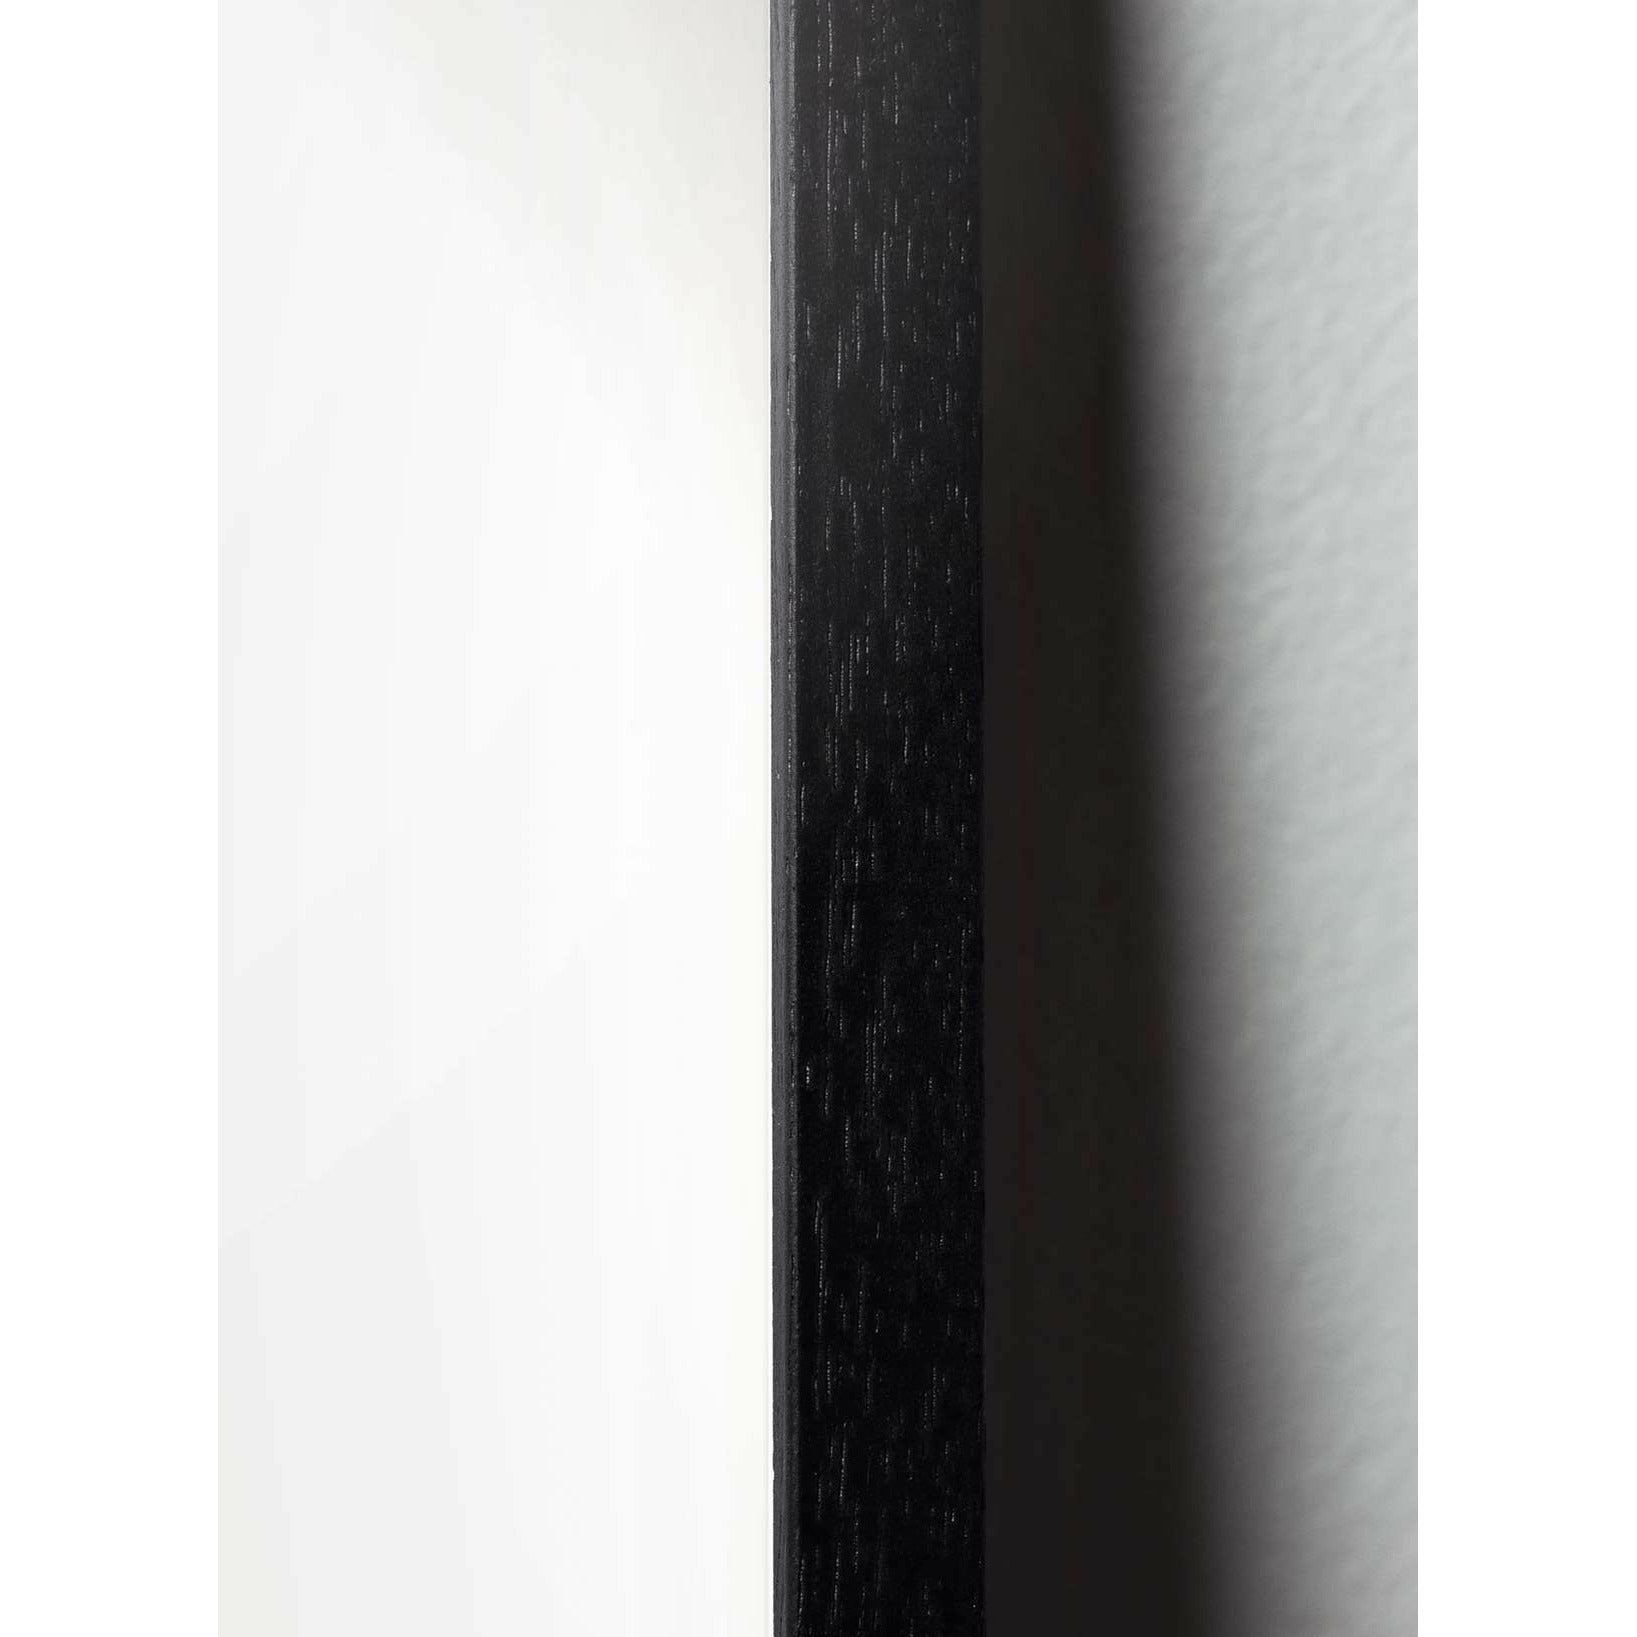 Brainchild Pelican Classic -affisch, ram i svart målat trä 30x40 cm, mörkblå bakgrund